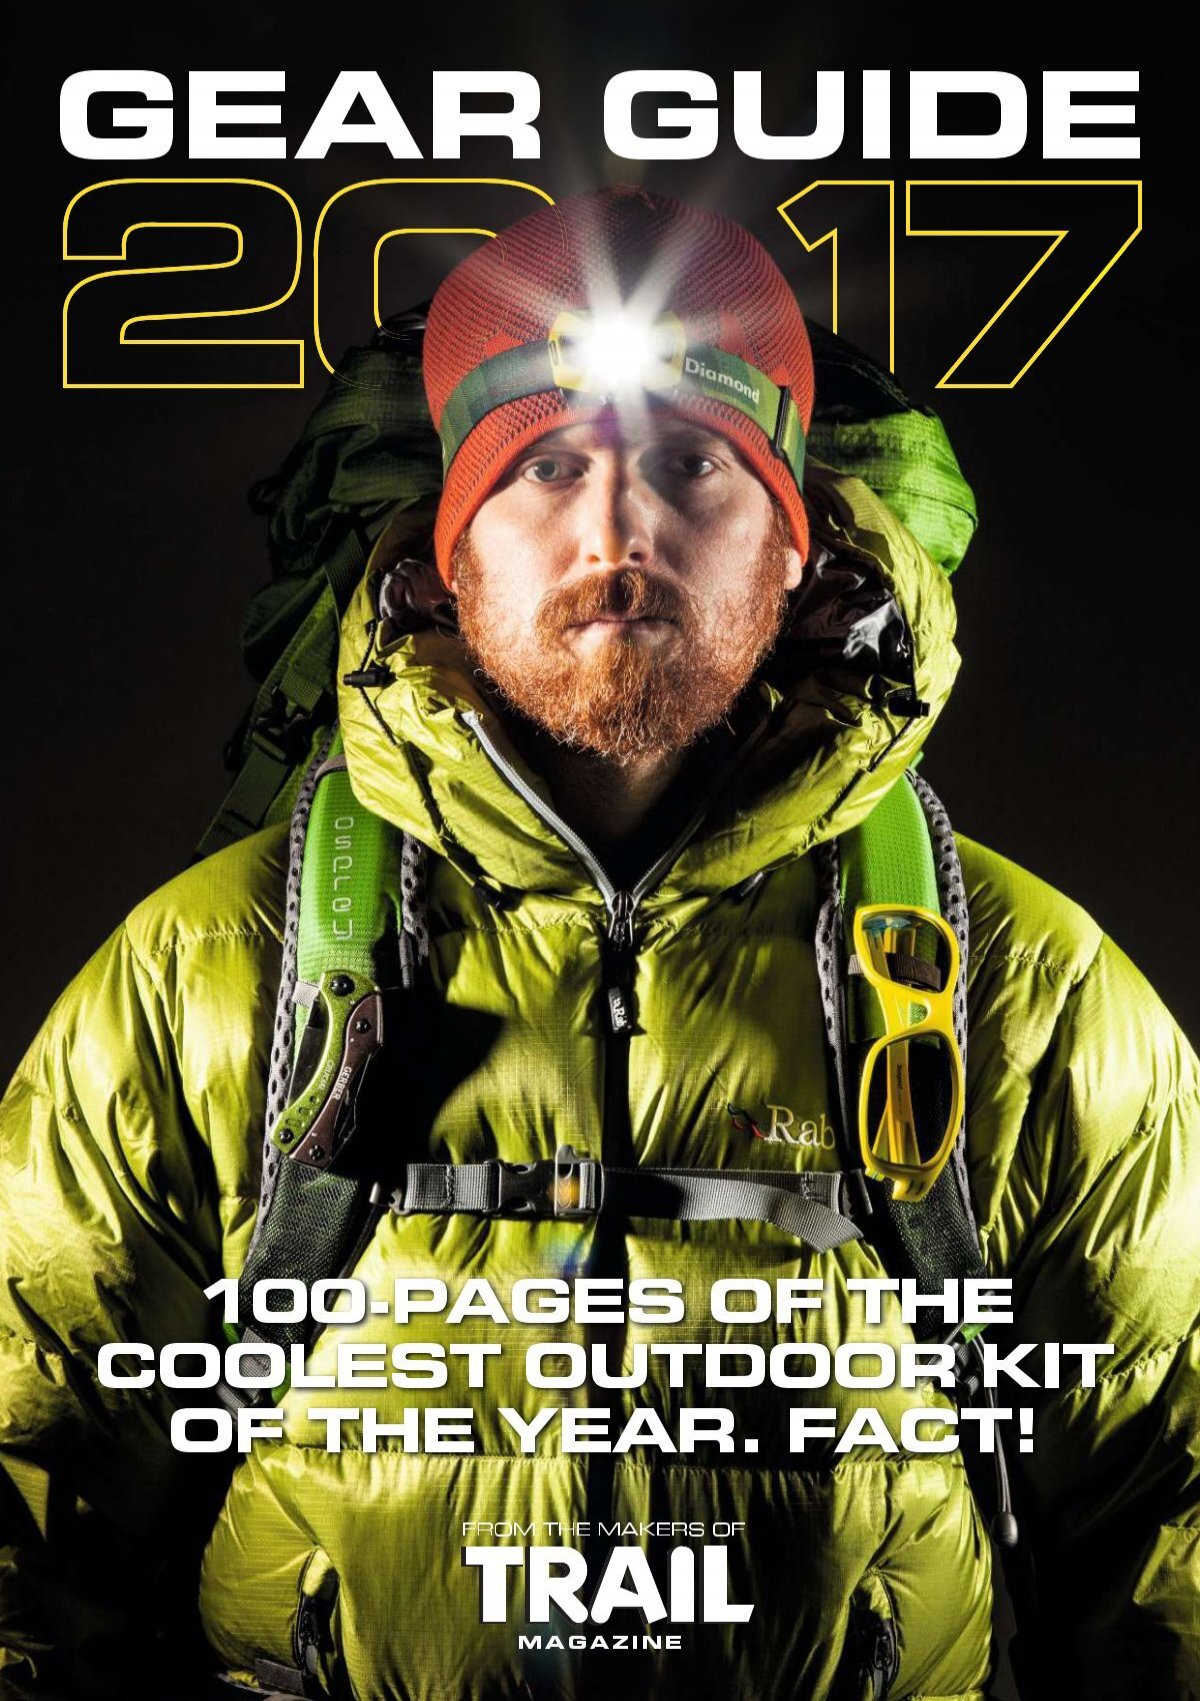 Trail Gear Guide 2017